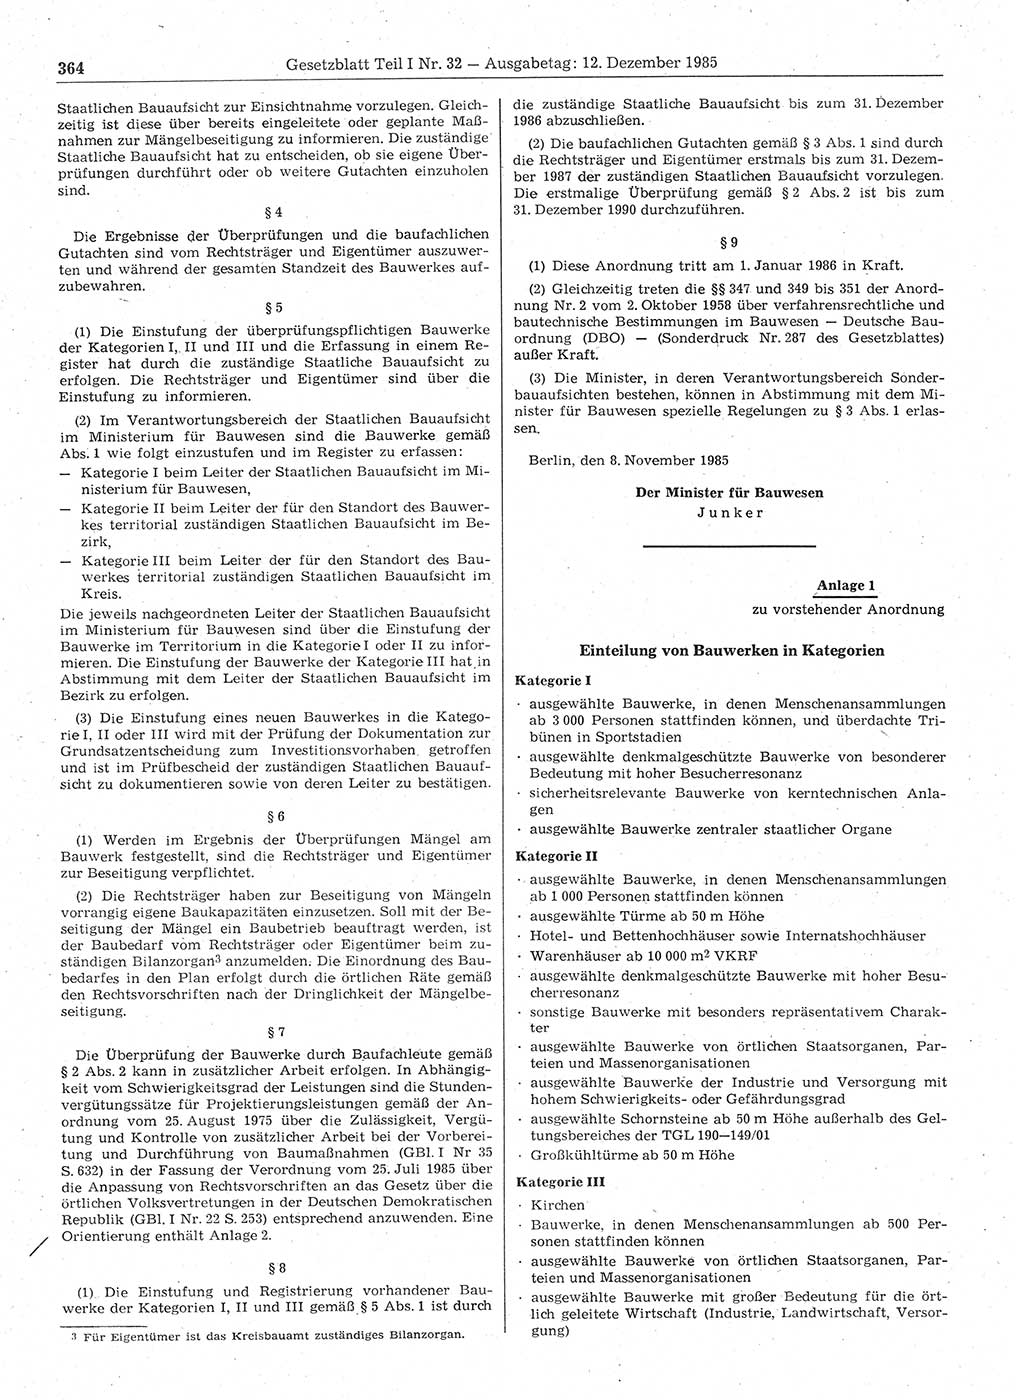 Gesetzblatt (GBl.) der Deutschen Demokratischen Republik (DDR) Teil Ⅰ 1985, Seite 364 (GBl. DDR Ⅰ 1985, S. 364)